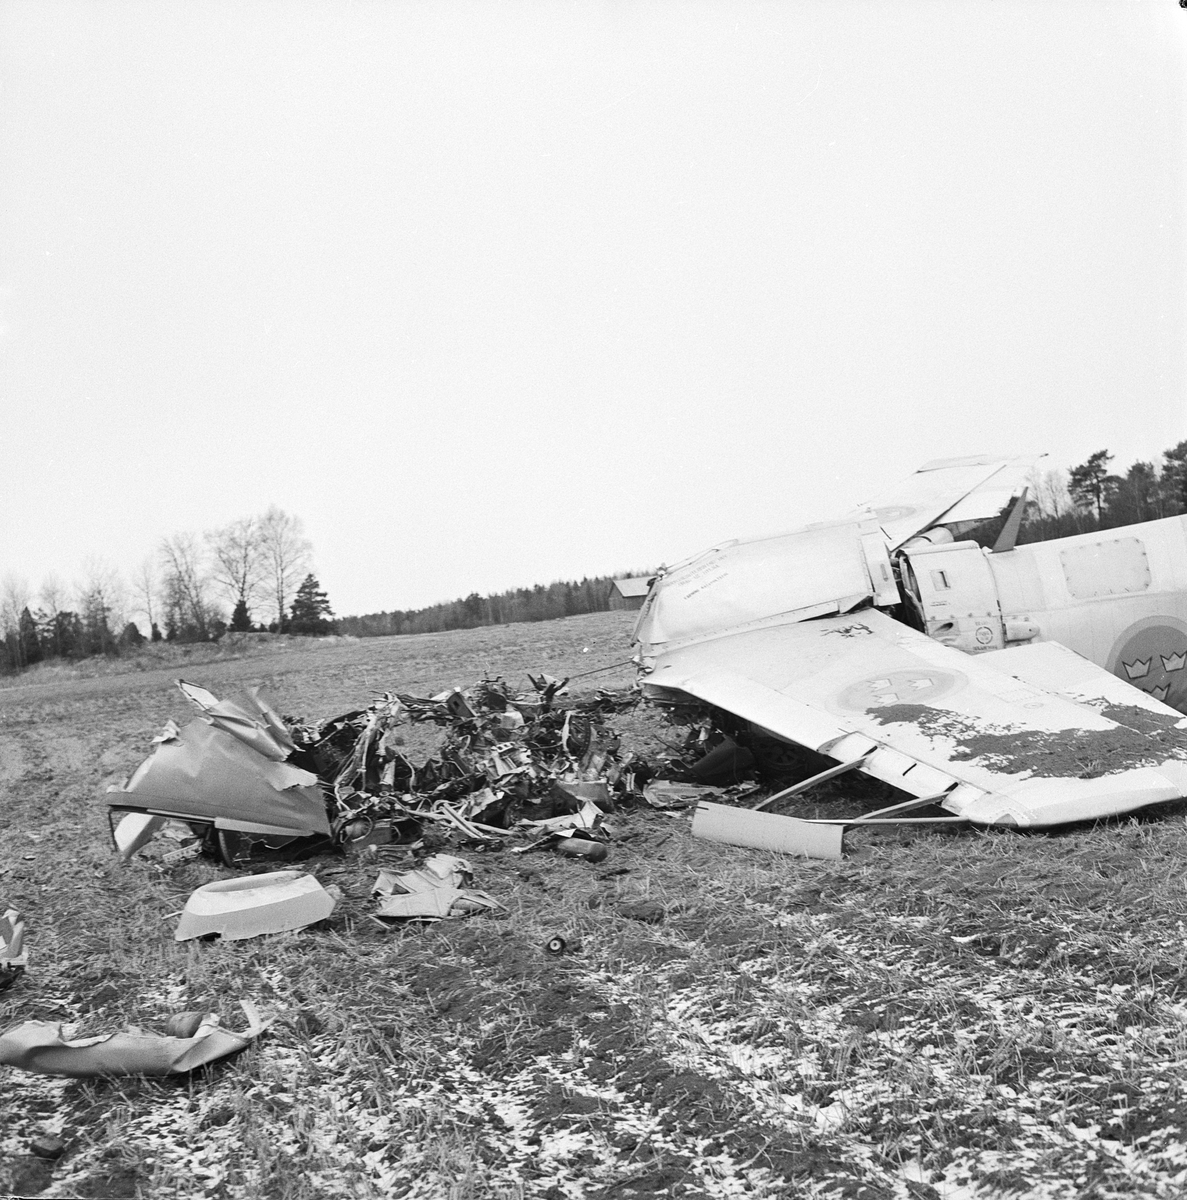 Fältflygare Martin Lang räddade sig i fallskärm när hans plan störtade i Långtibbleby, Uppland 1959